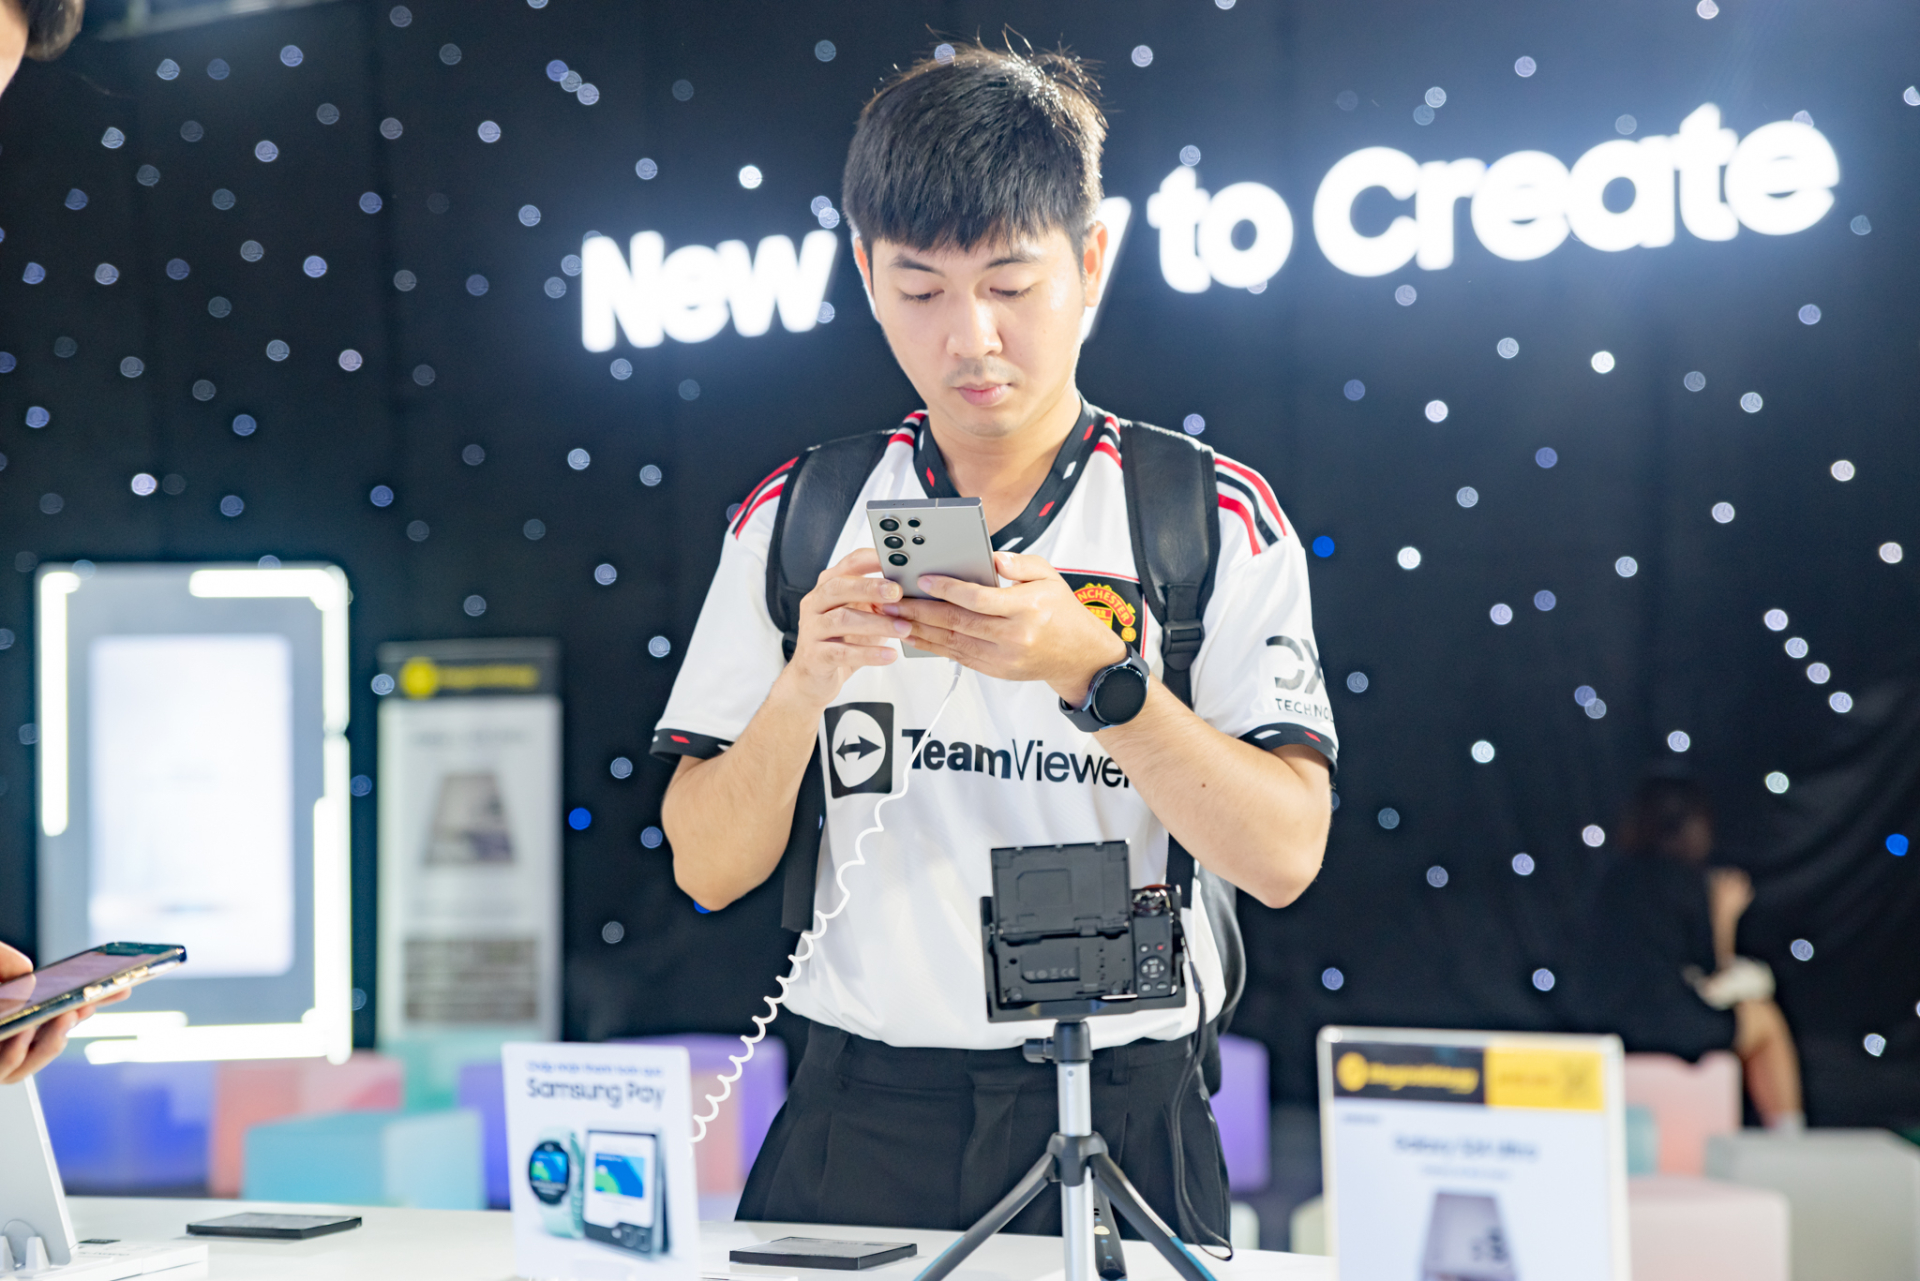 Đặc quyền dành cho Samfan từ Samsung: cùng chuyên gia vén màn kỷ nguyên mới với 'Galaxy AI' - ảnh 3